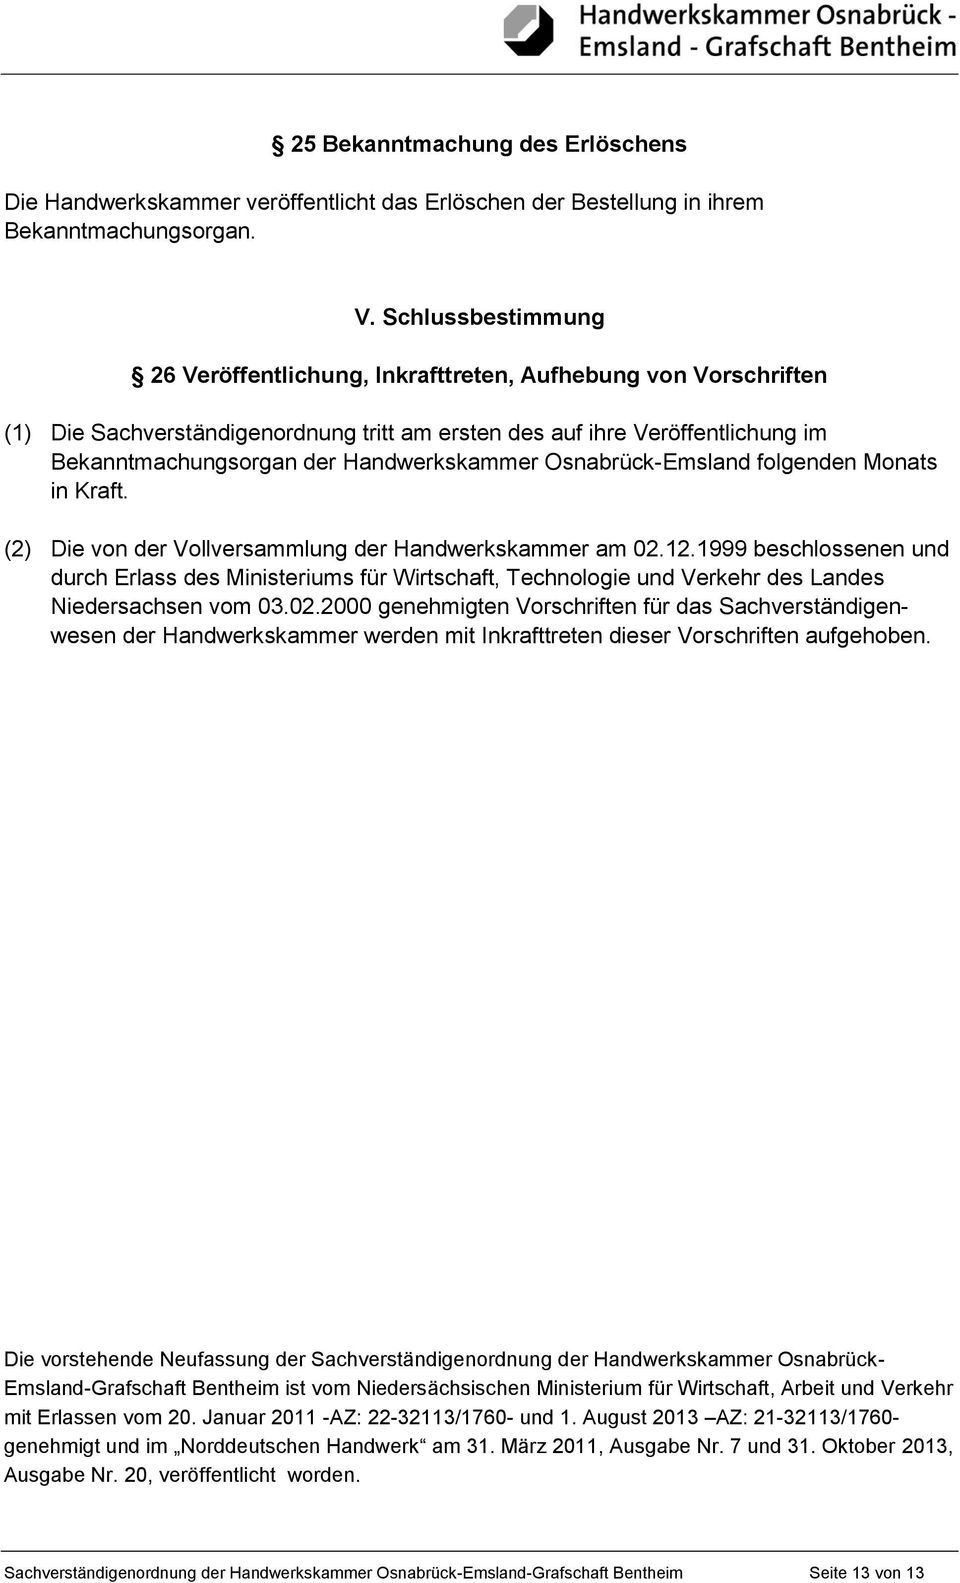 Handwerkskammer Osnabrück-Emsland folgenden Monats in Kraft. (2) Die von der Vollversammlung der Handwerkskammer am 02.12.